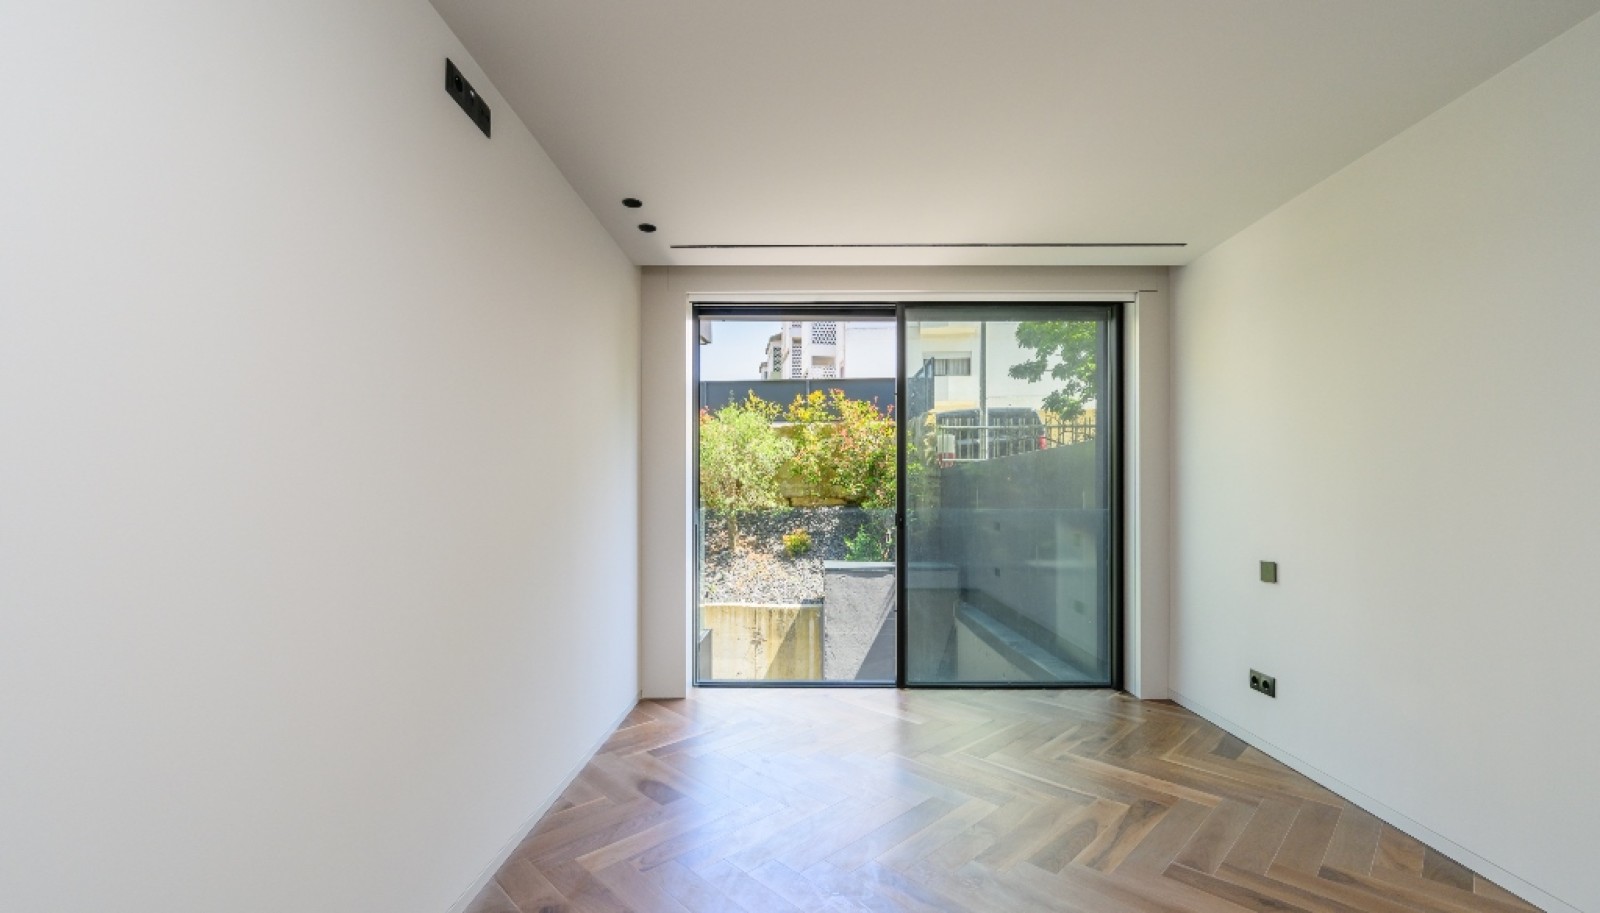 Venda: Apartamento novo com terraço, na Boavista, Porto_267545